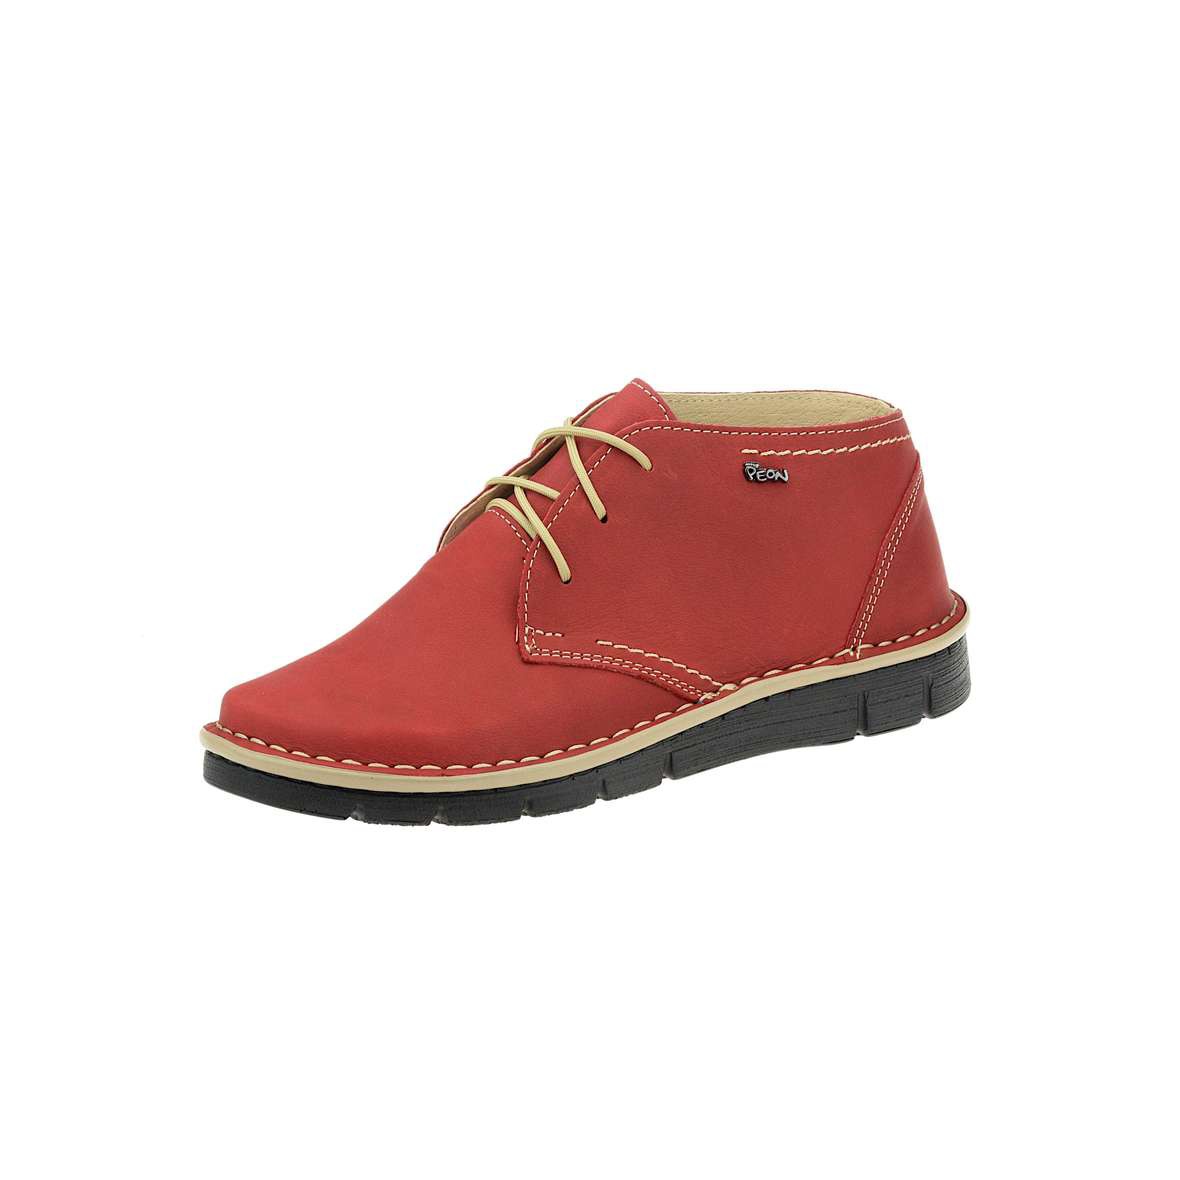  Peon  PP/102-48 dámská obuv kotníčková červená